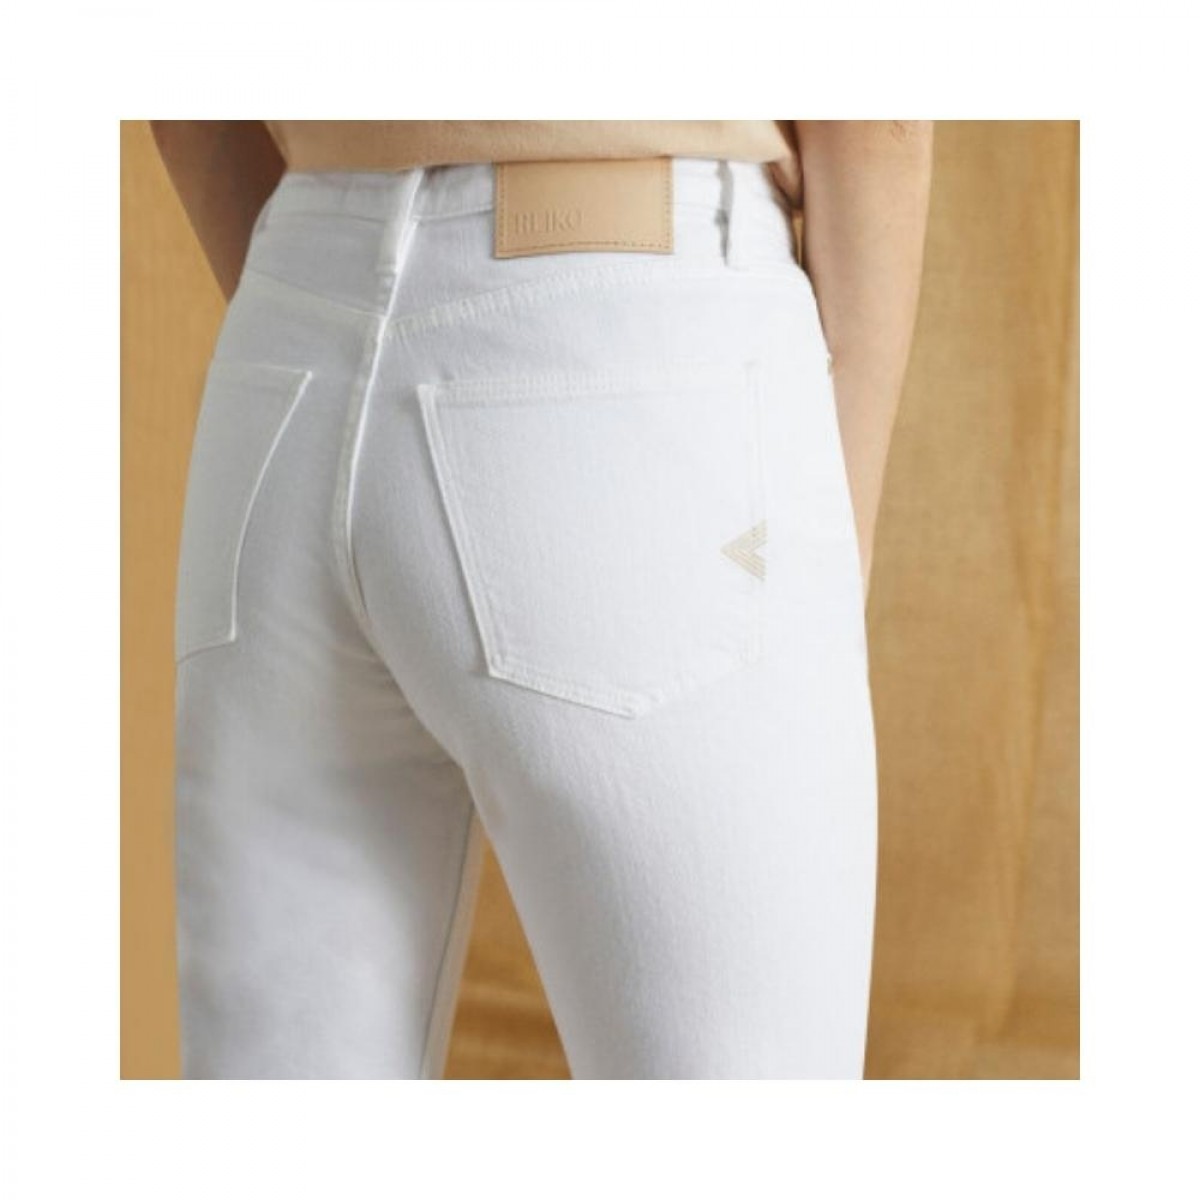 milo jeans - white - bagfra